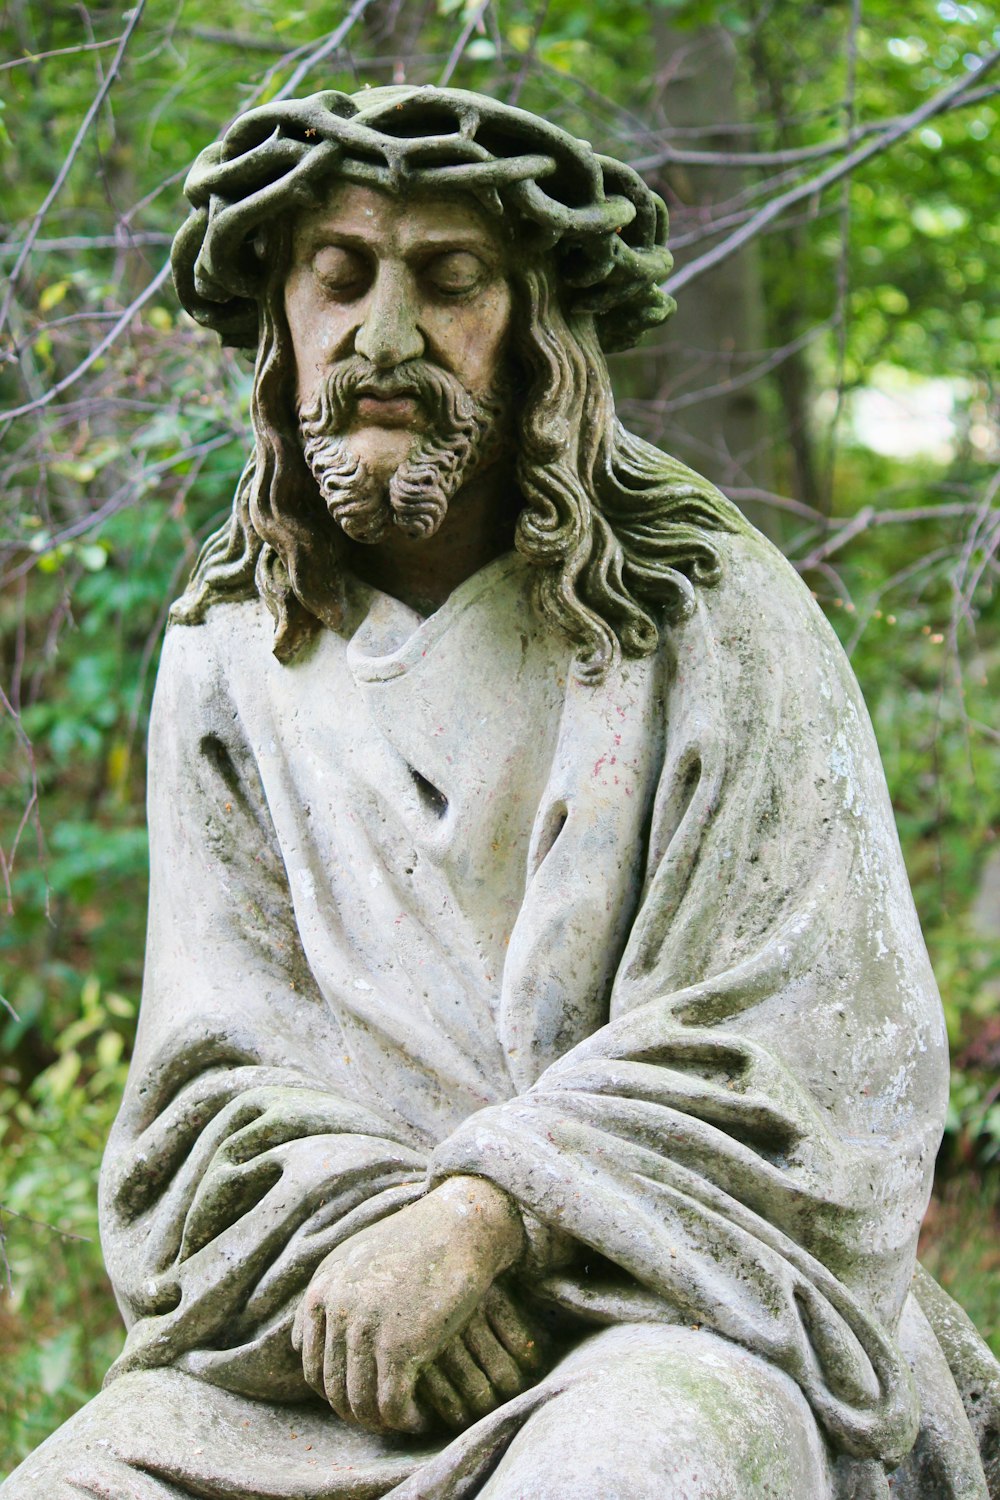 Jesus Christ statue